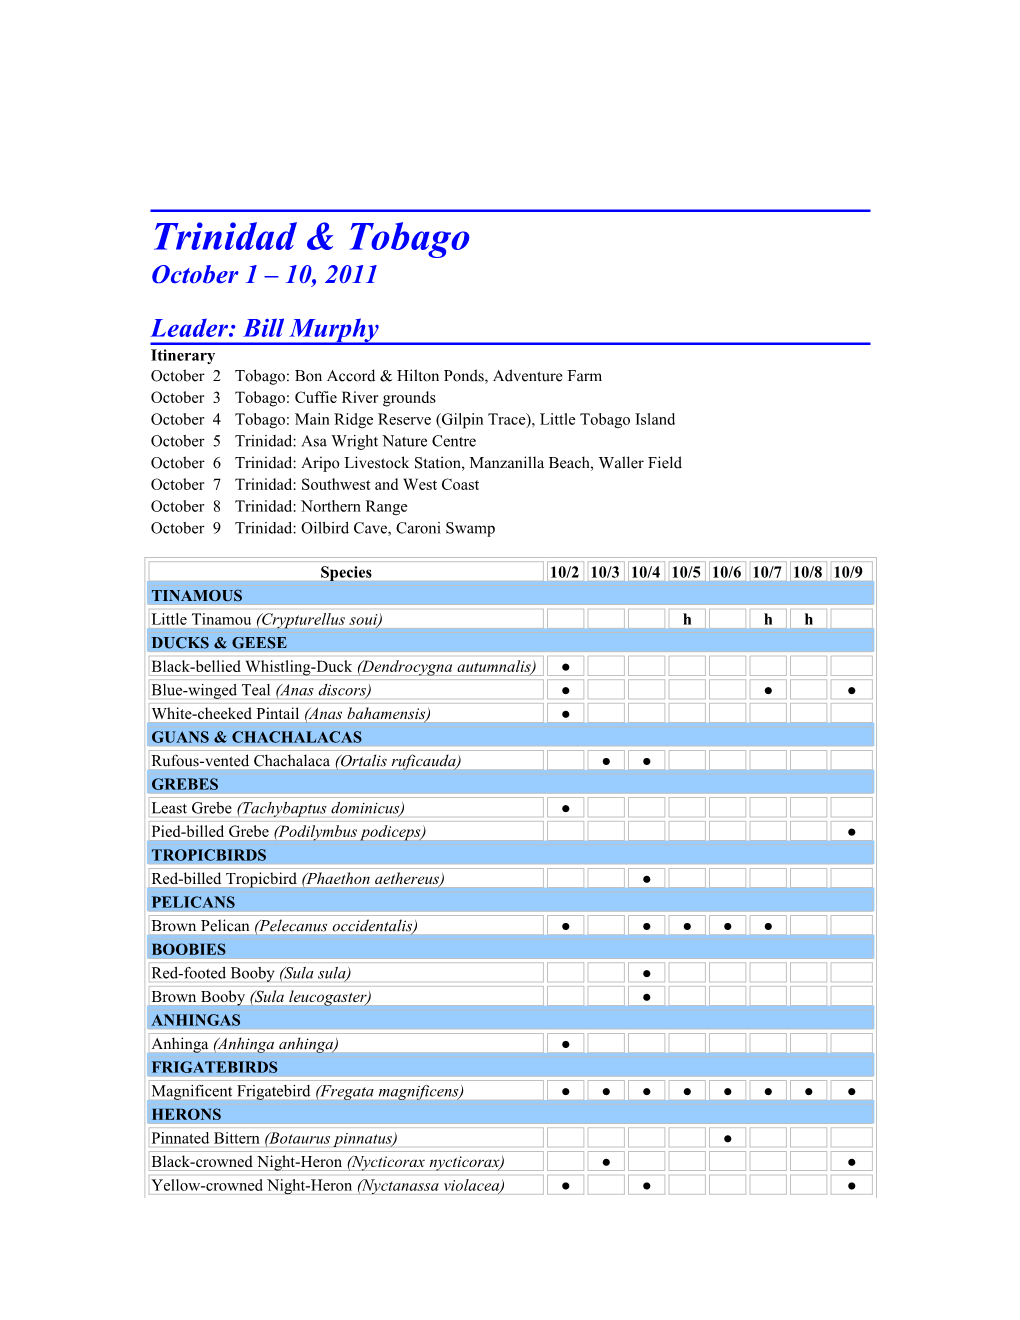 Trinidad & Tobago Birding Annotated Bird List, Trinidad & Tobago, October 2011